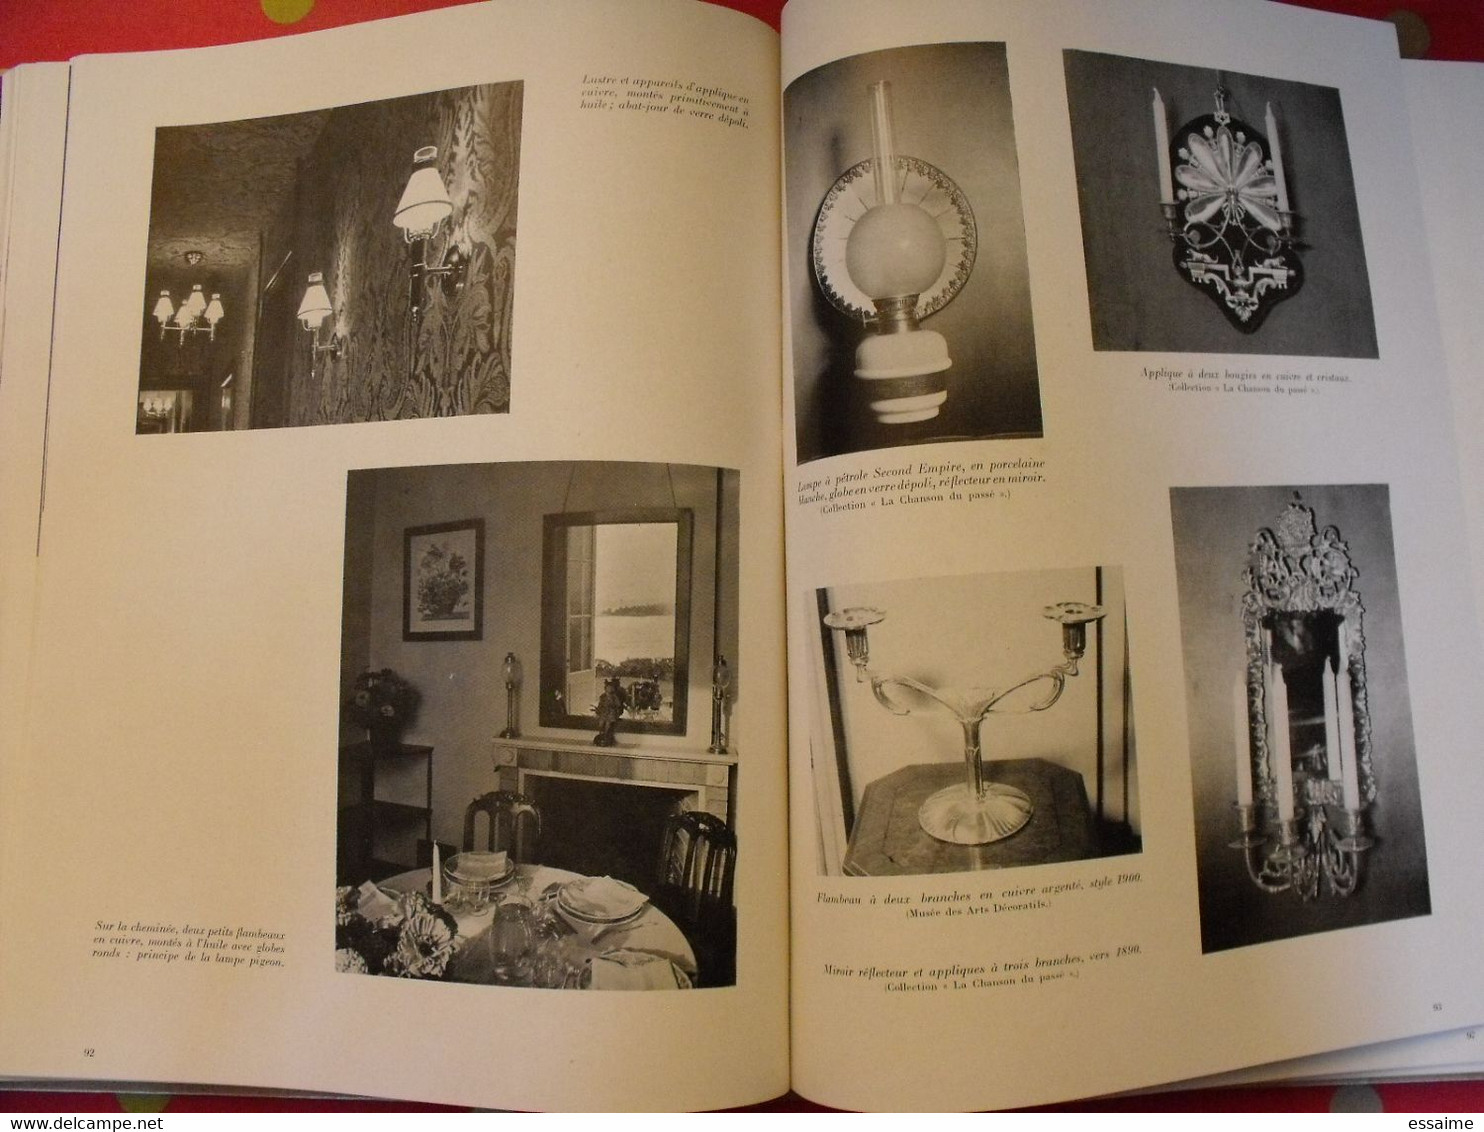 styles de France "objets et collections". plaisir de france vers 1950-60. très illustré. beau livre avec emboitage